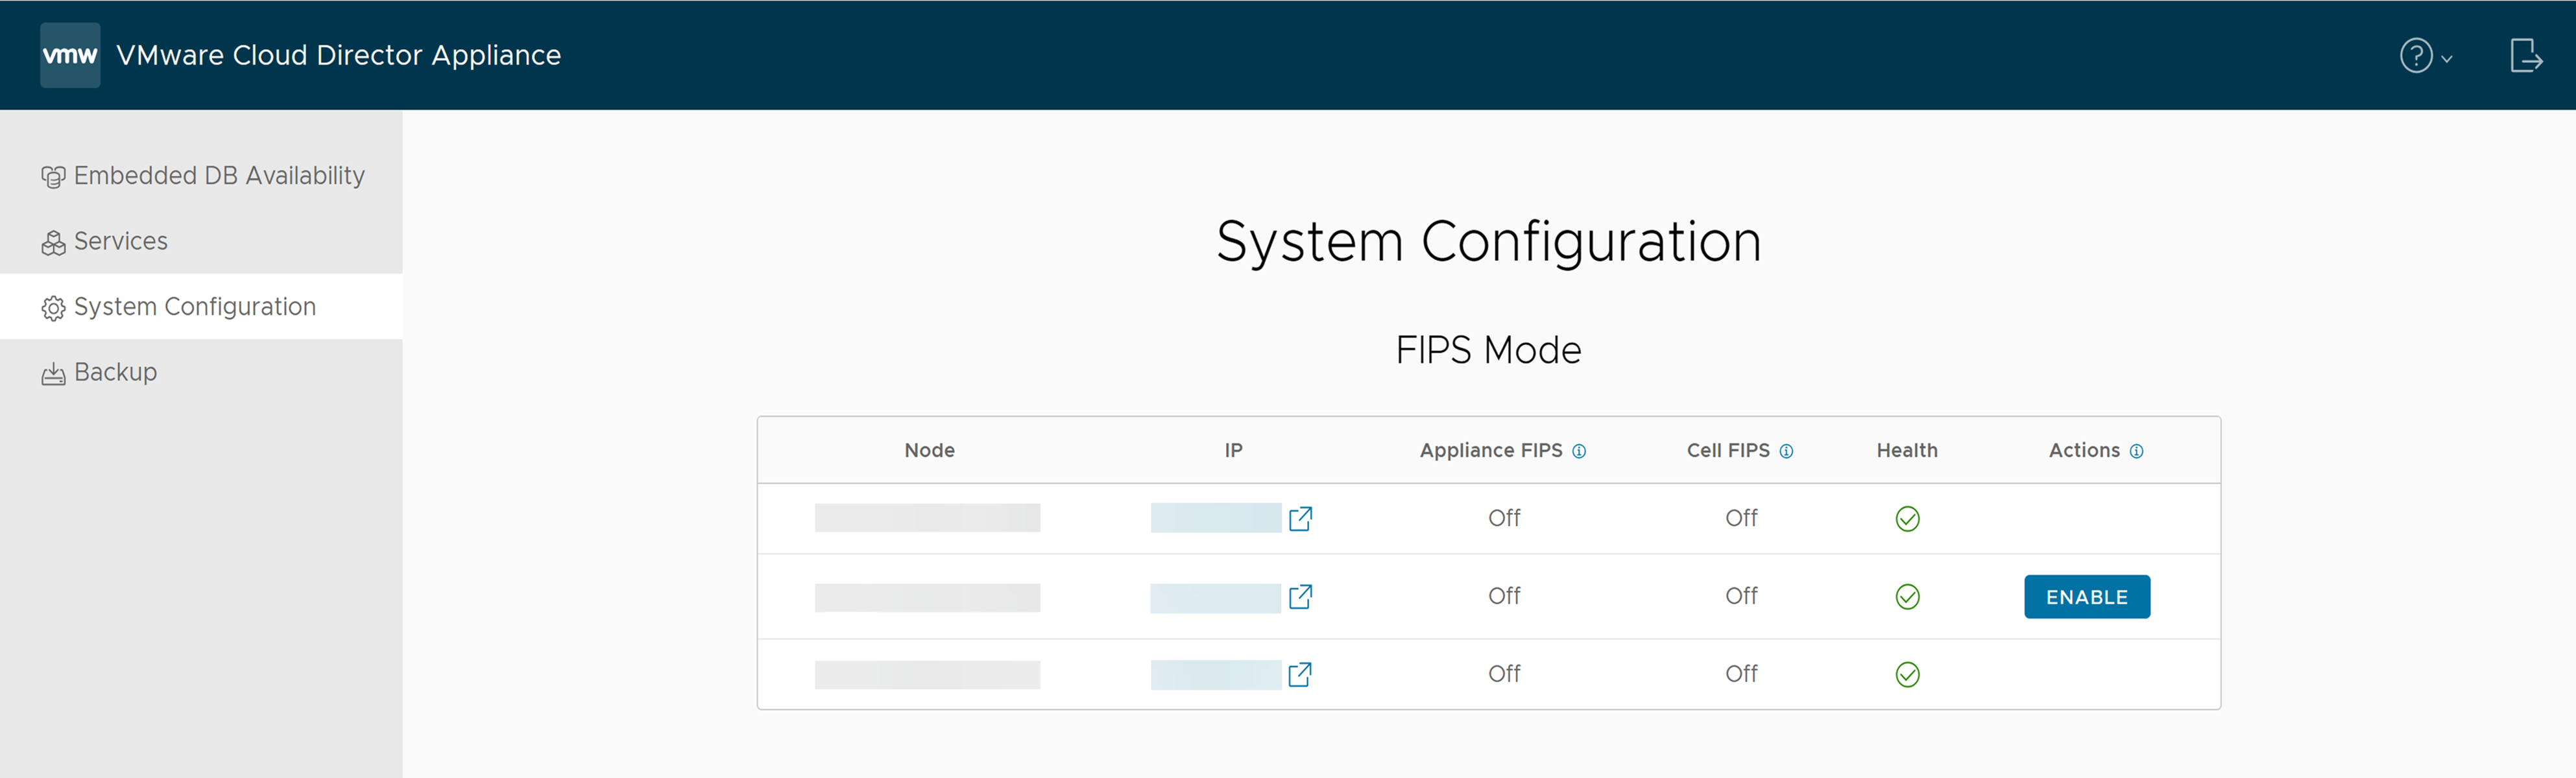 Dans l'onglet Configuration système de l'interface utilisateur de gestion du dispositif VMware Cloud Director, vous trouverez des informations sur le mode FIPS.